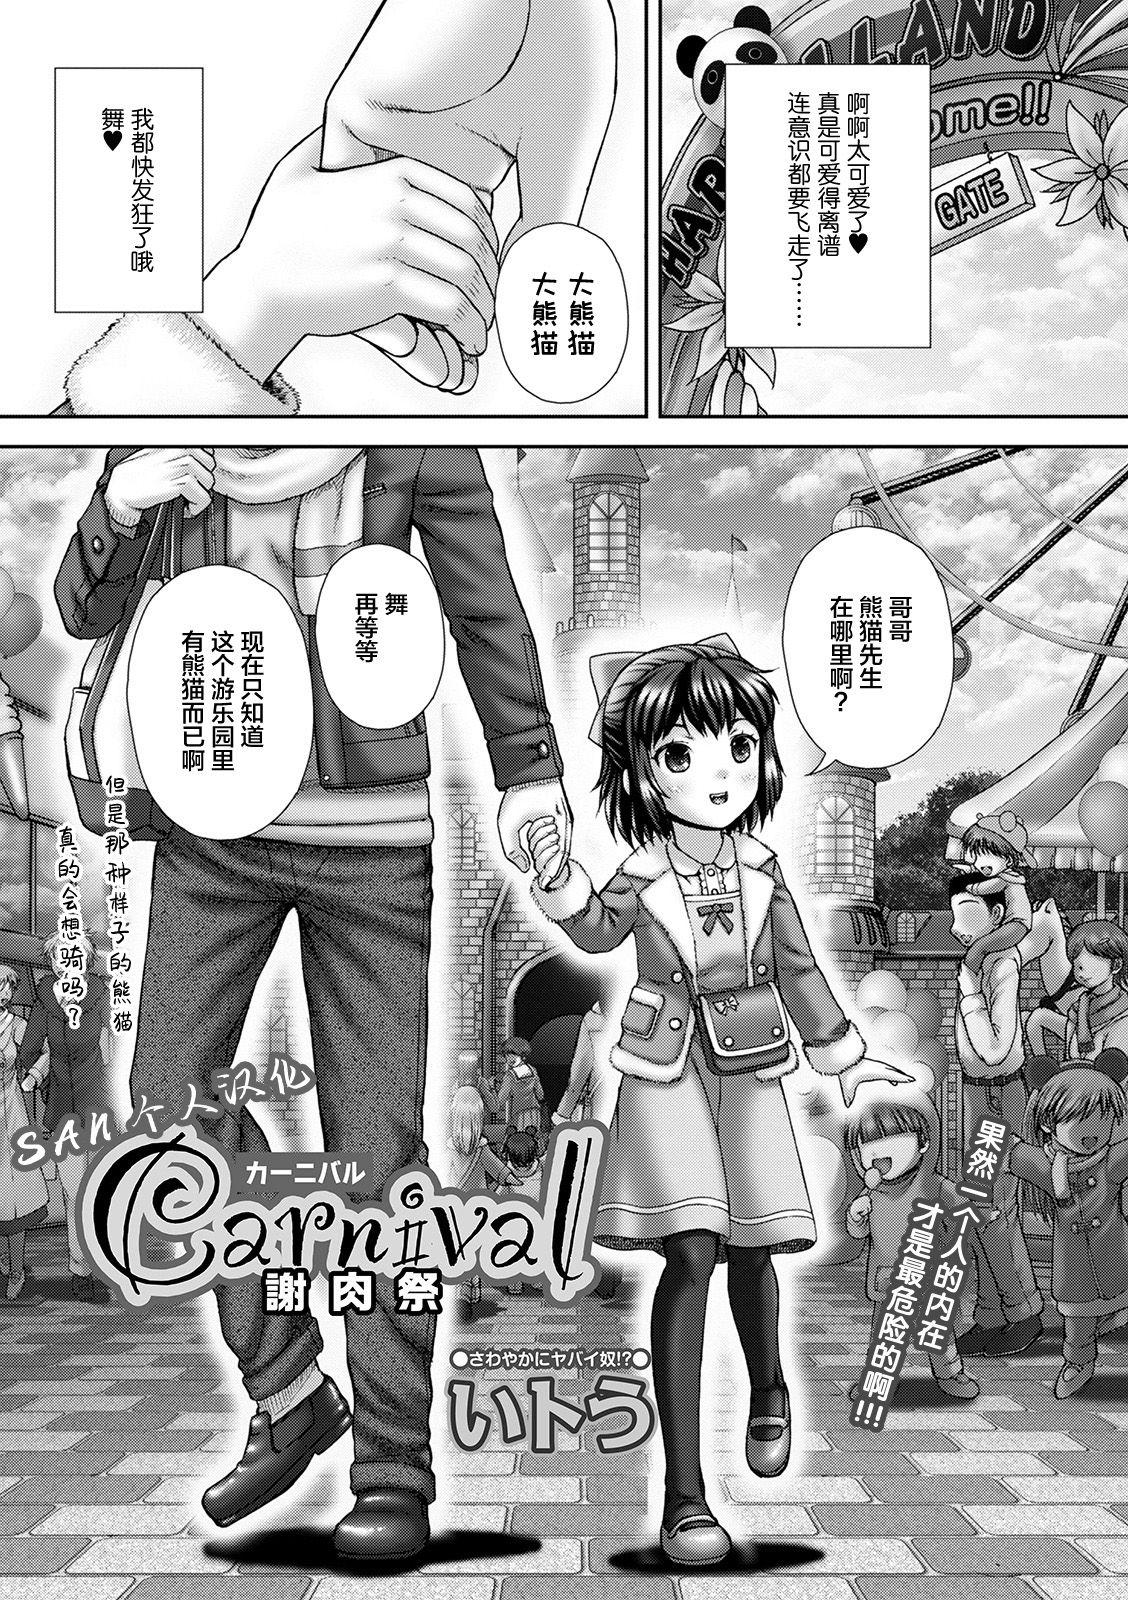 Carnival Shanikusai 0